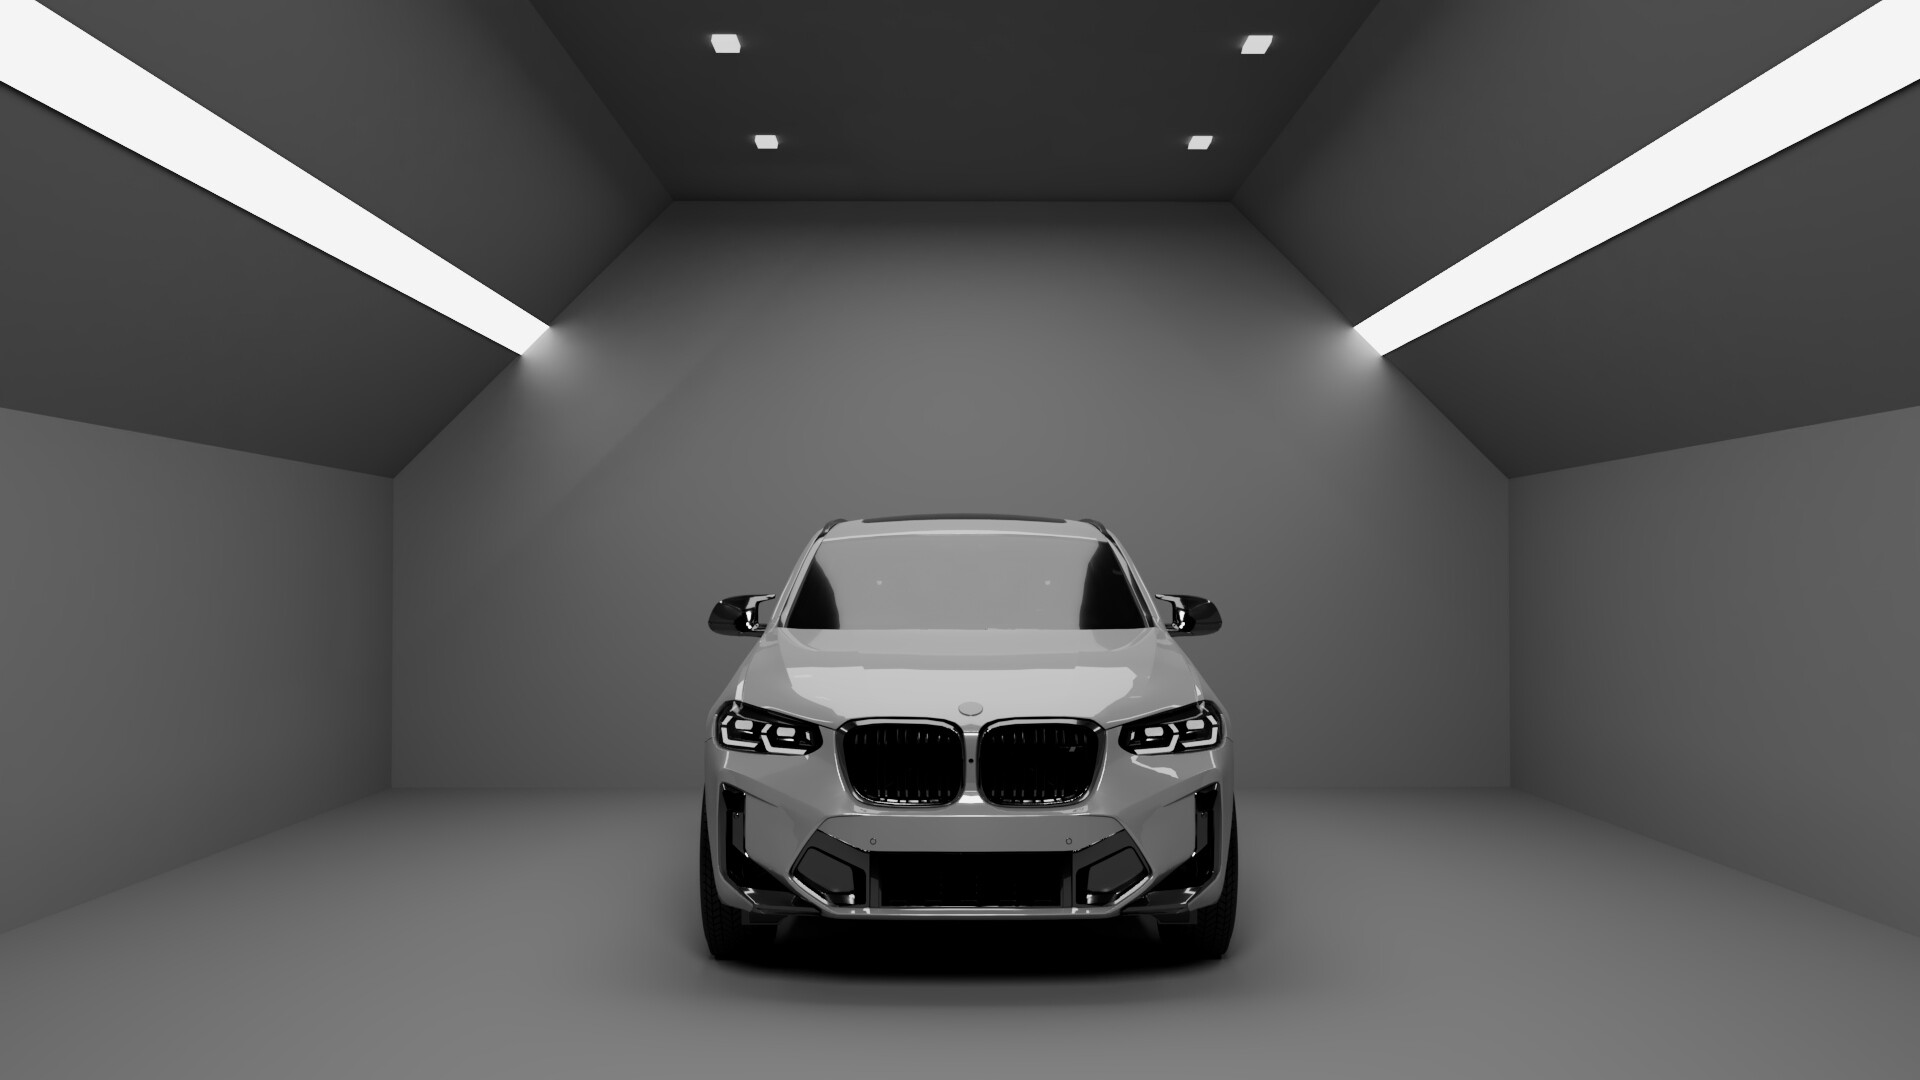 ArtStation - BMW logo